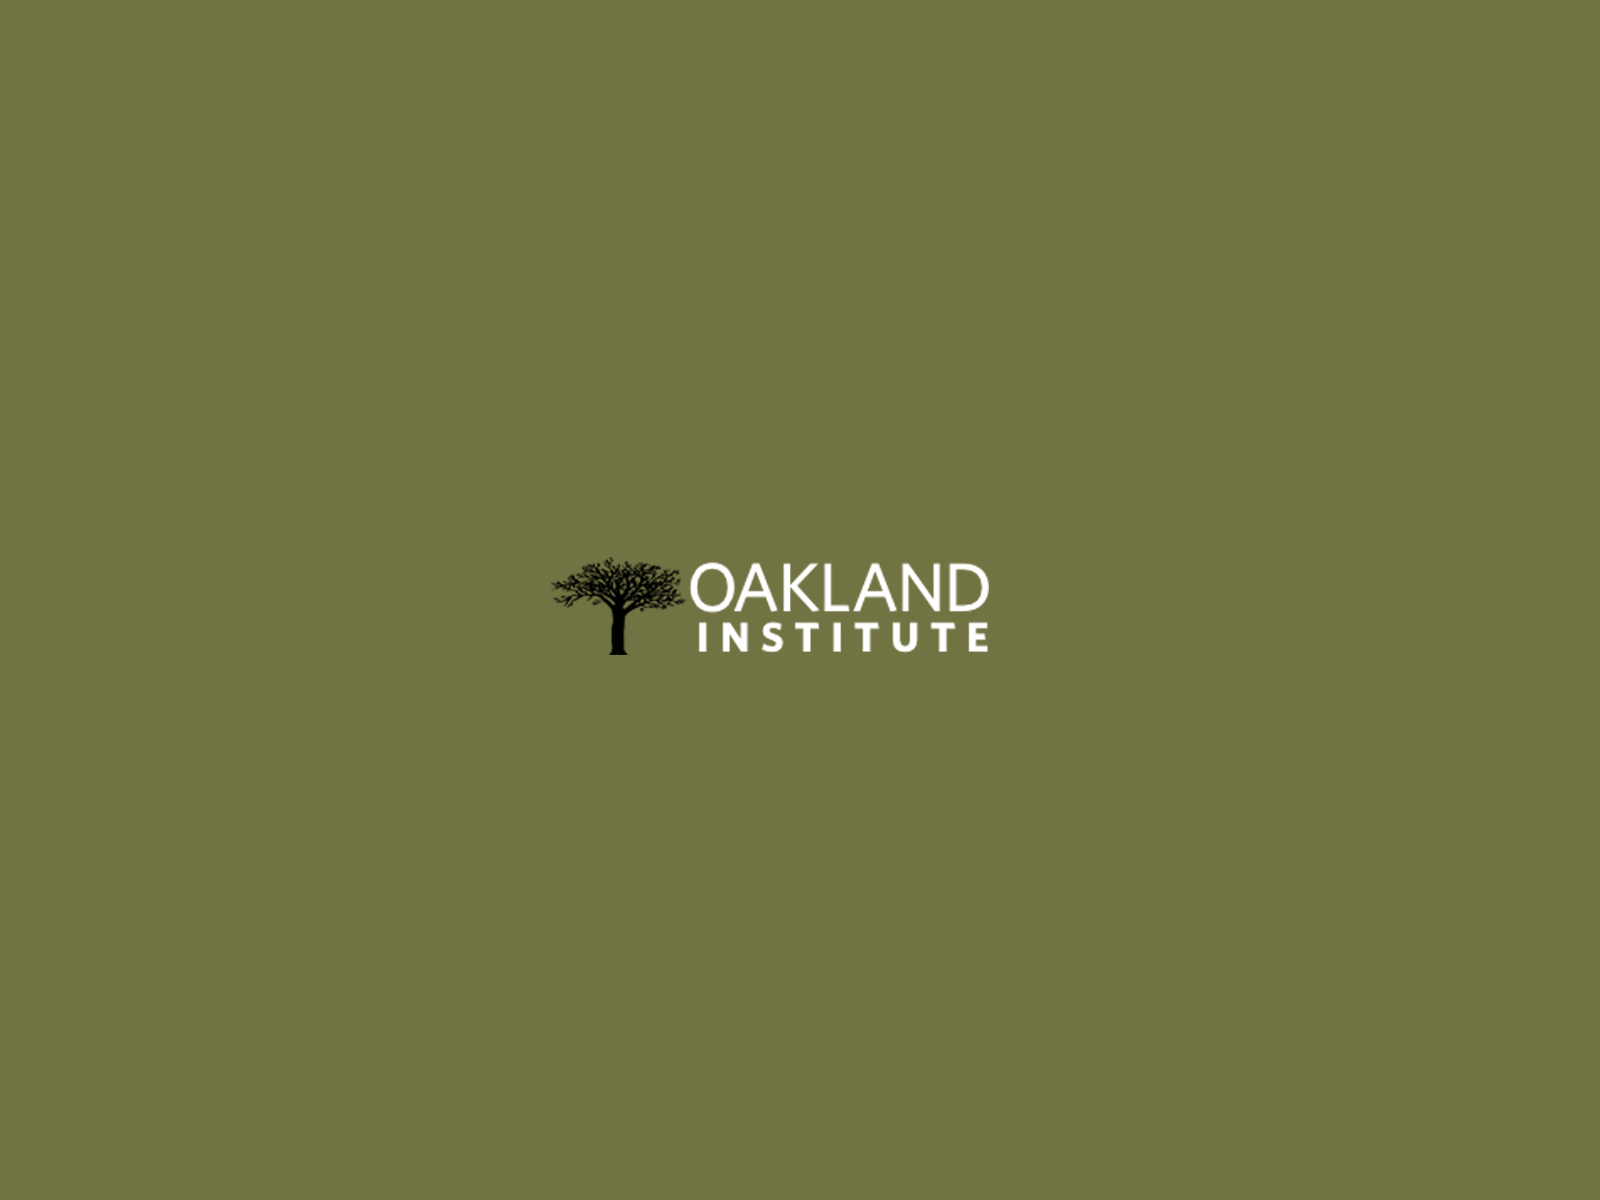 www.oaklandinstitute.org